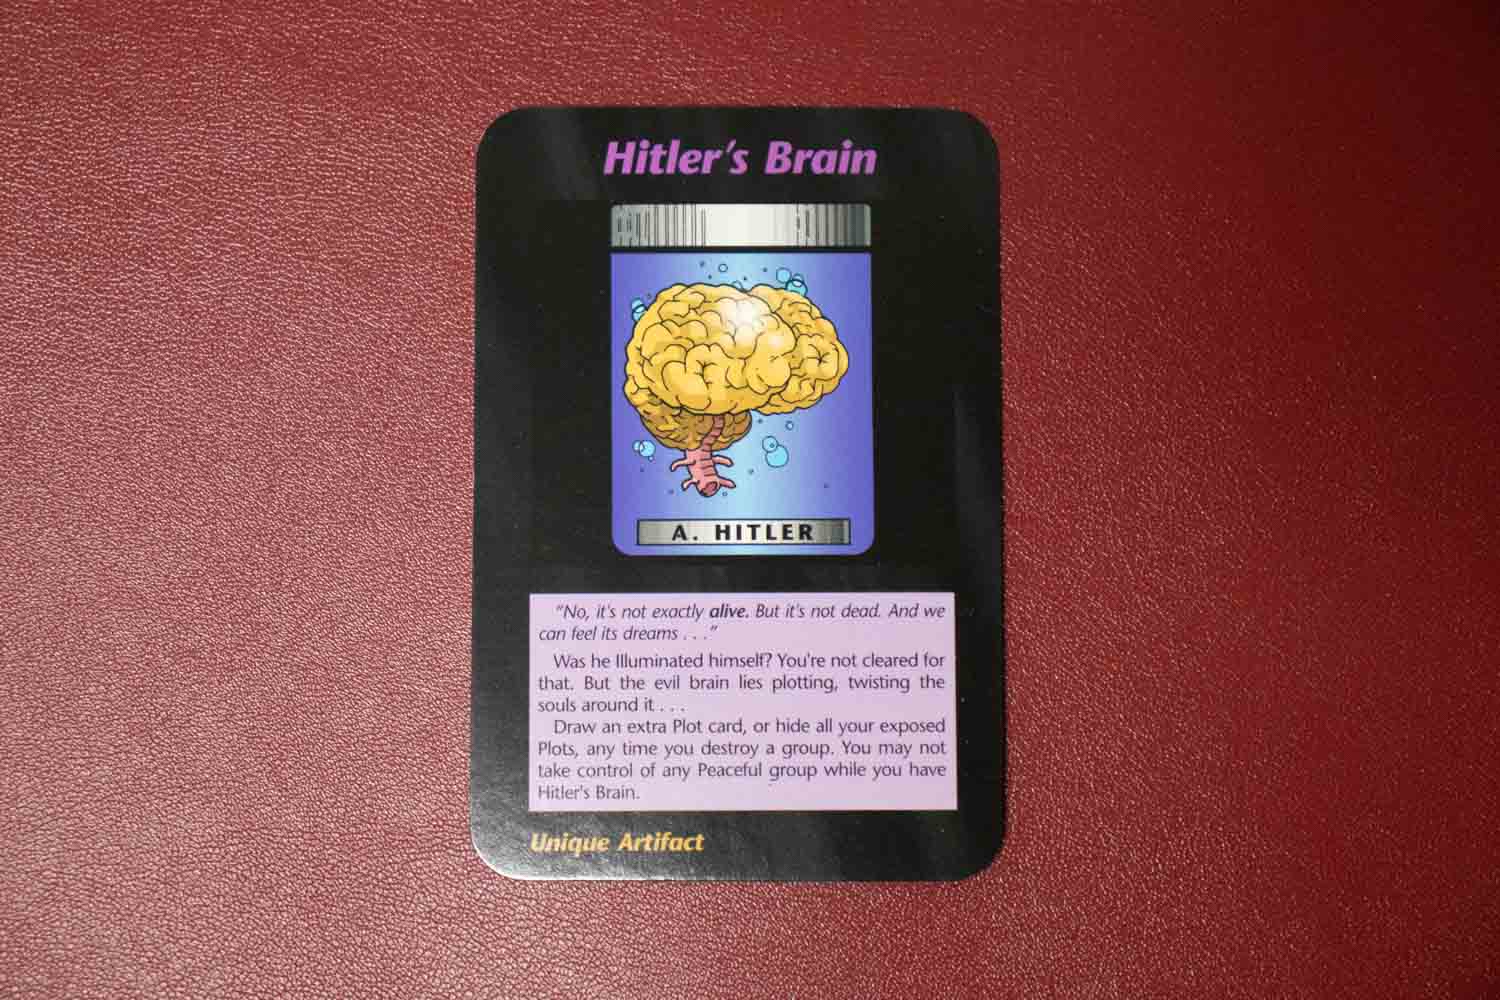 【イルミナティカード】Hitler’s Brainの詳細と都市伝説まとめ【アドルフ・ヒトラーの意思】